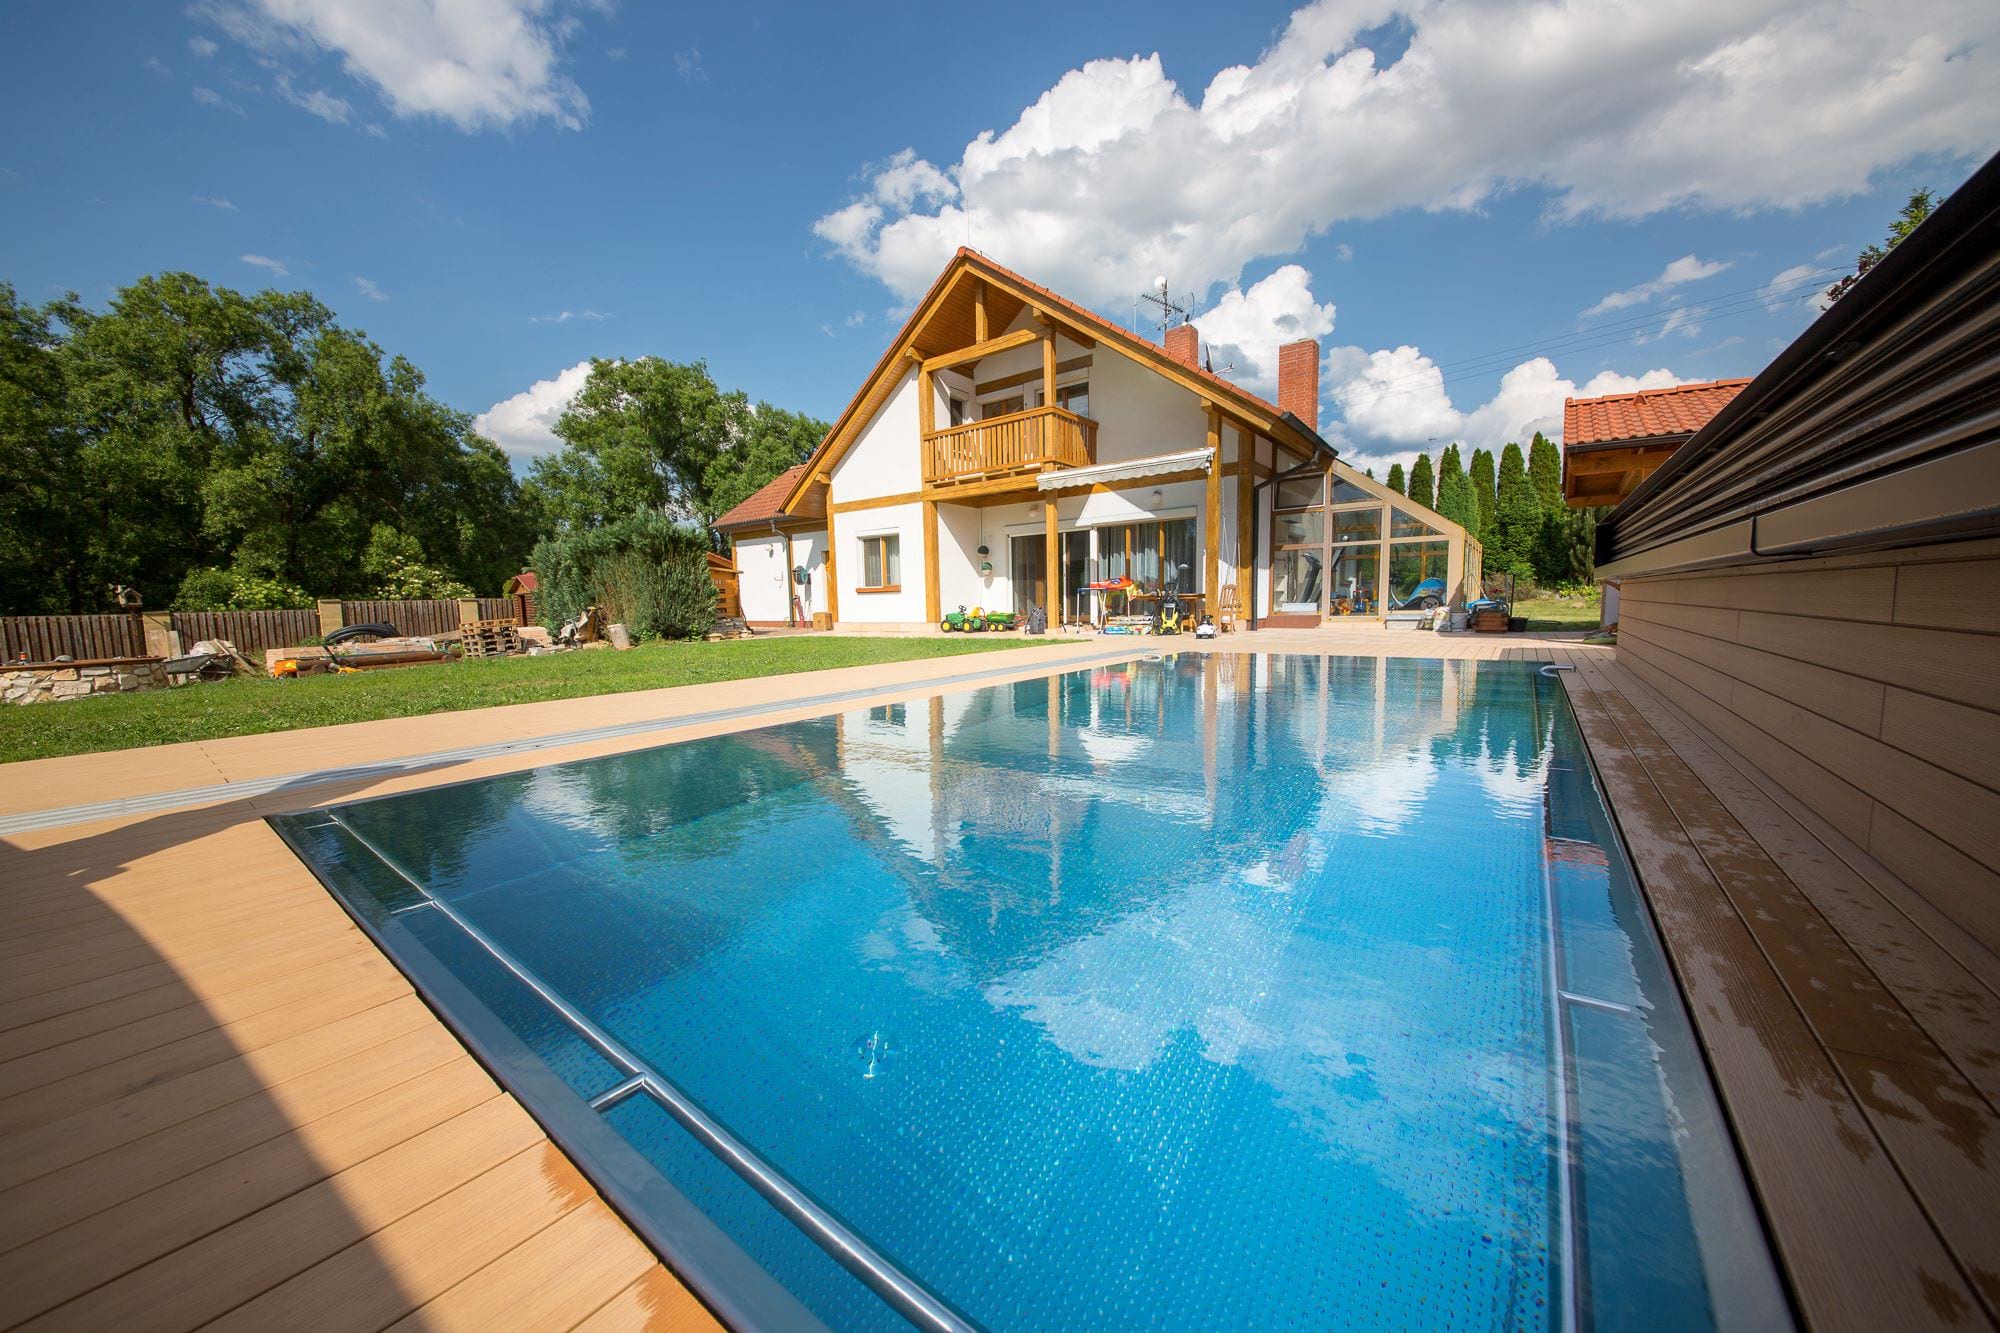 Rodinný bazén s brouzdalištěm pro děti | IMAGINOX